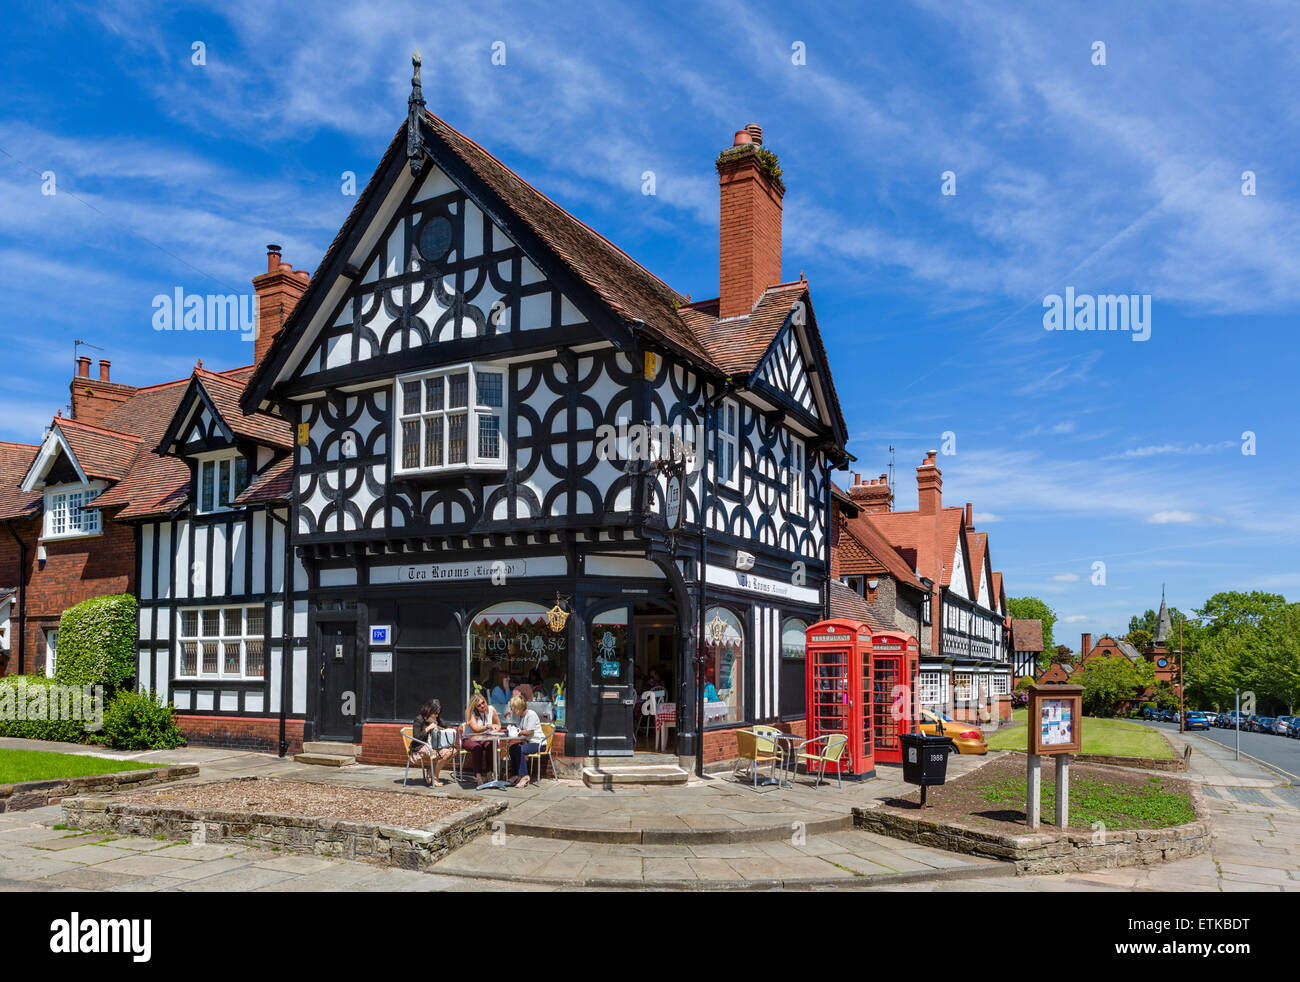 Tudor Rose Tea Rooms und Häuser in dem Modell Dorf Port Sunlight, Halbinsel Wirral, Merseyside, England, UK Stockfoto